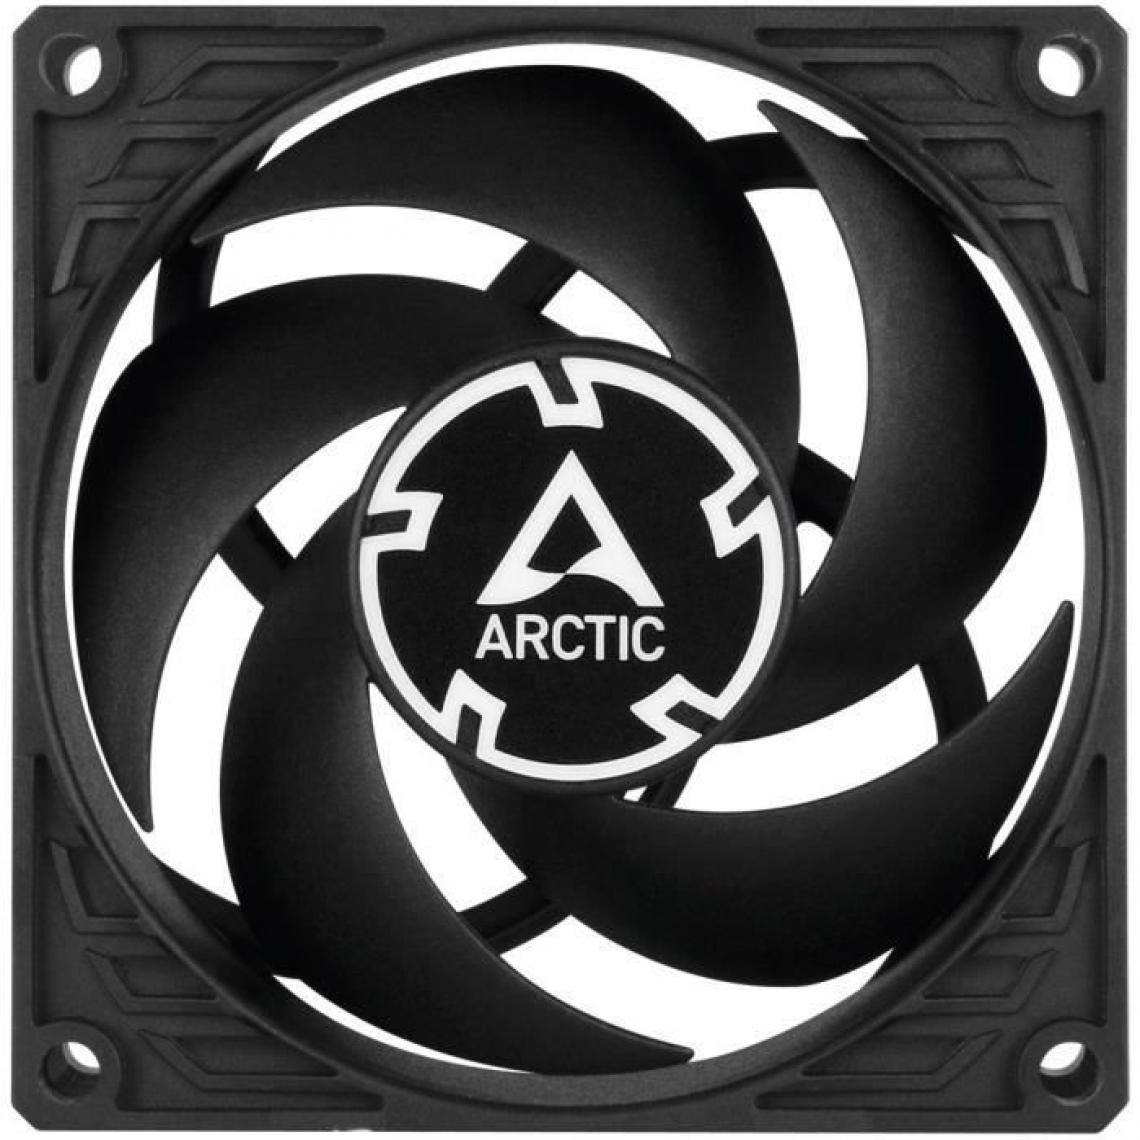 Arctic - Ventilateur boîtier - ARCTIC - ACFAN00147A - P8 - 80mm a faible bruit - Ventilateur Pour Boîtier